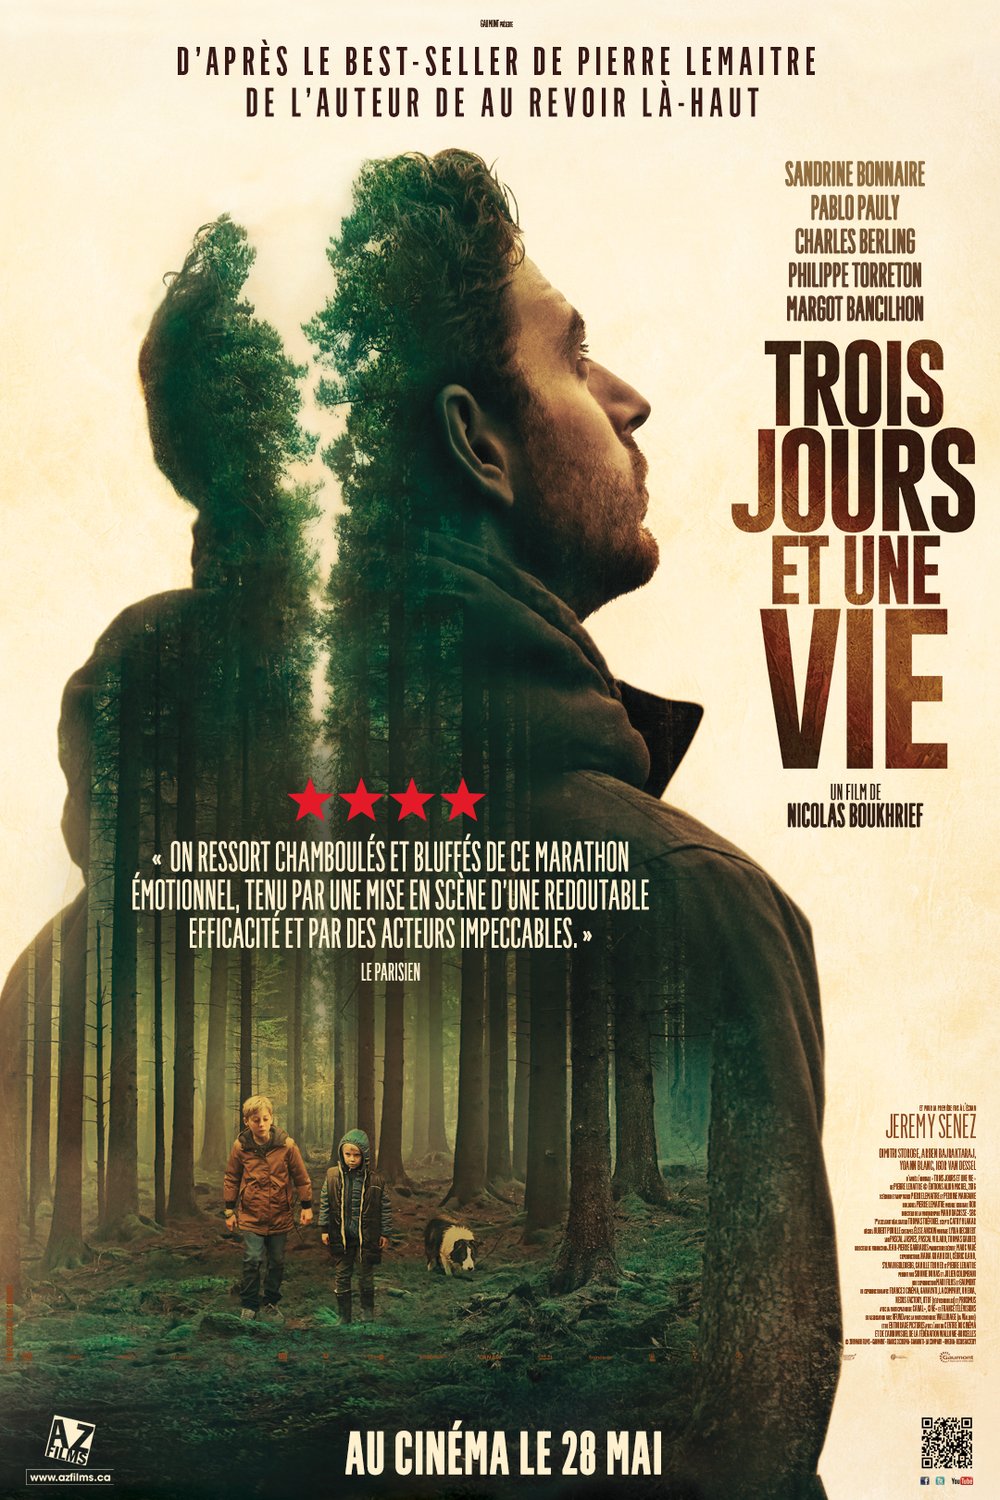 Poster of the movie Trois jours et une vie